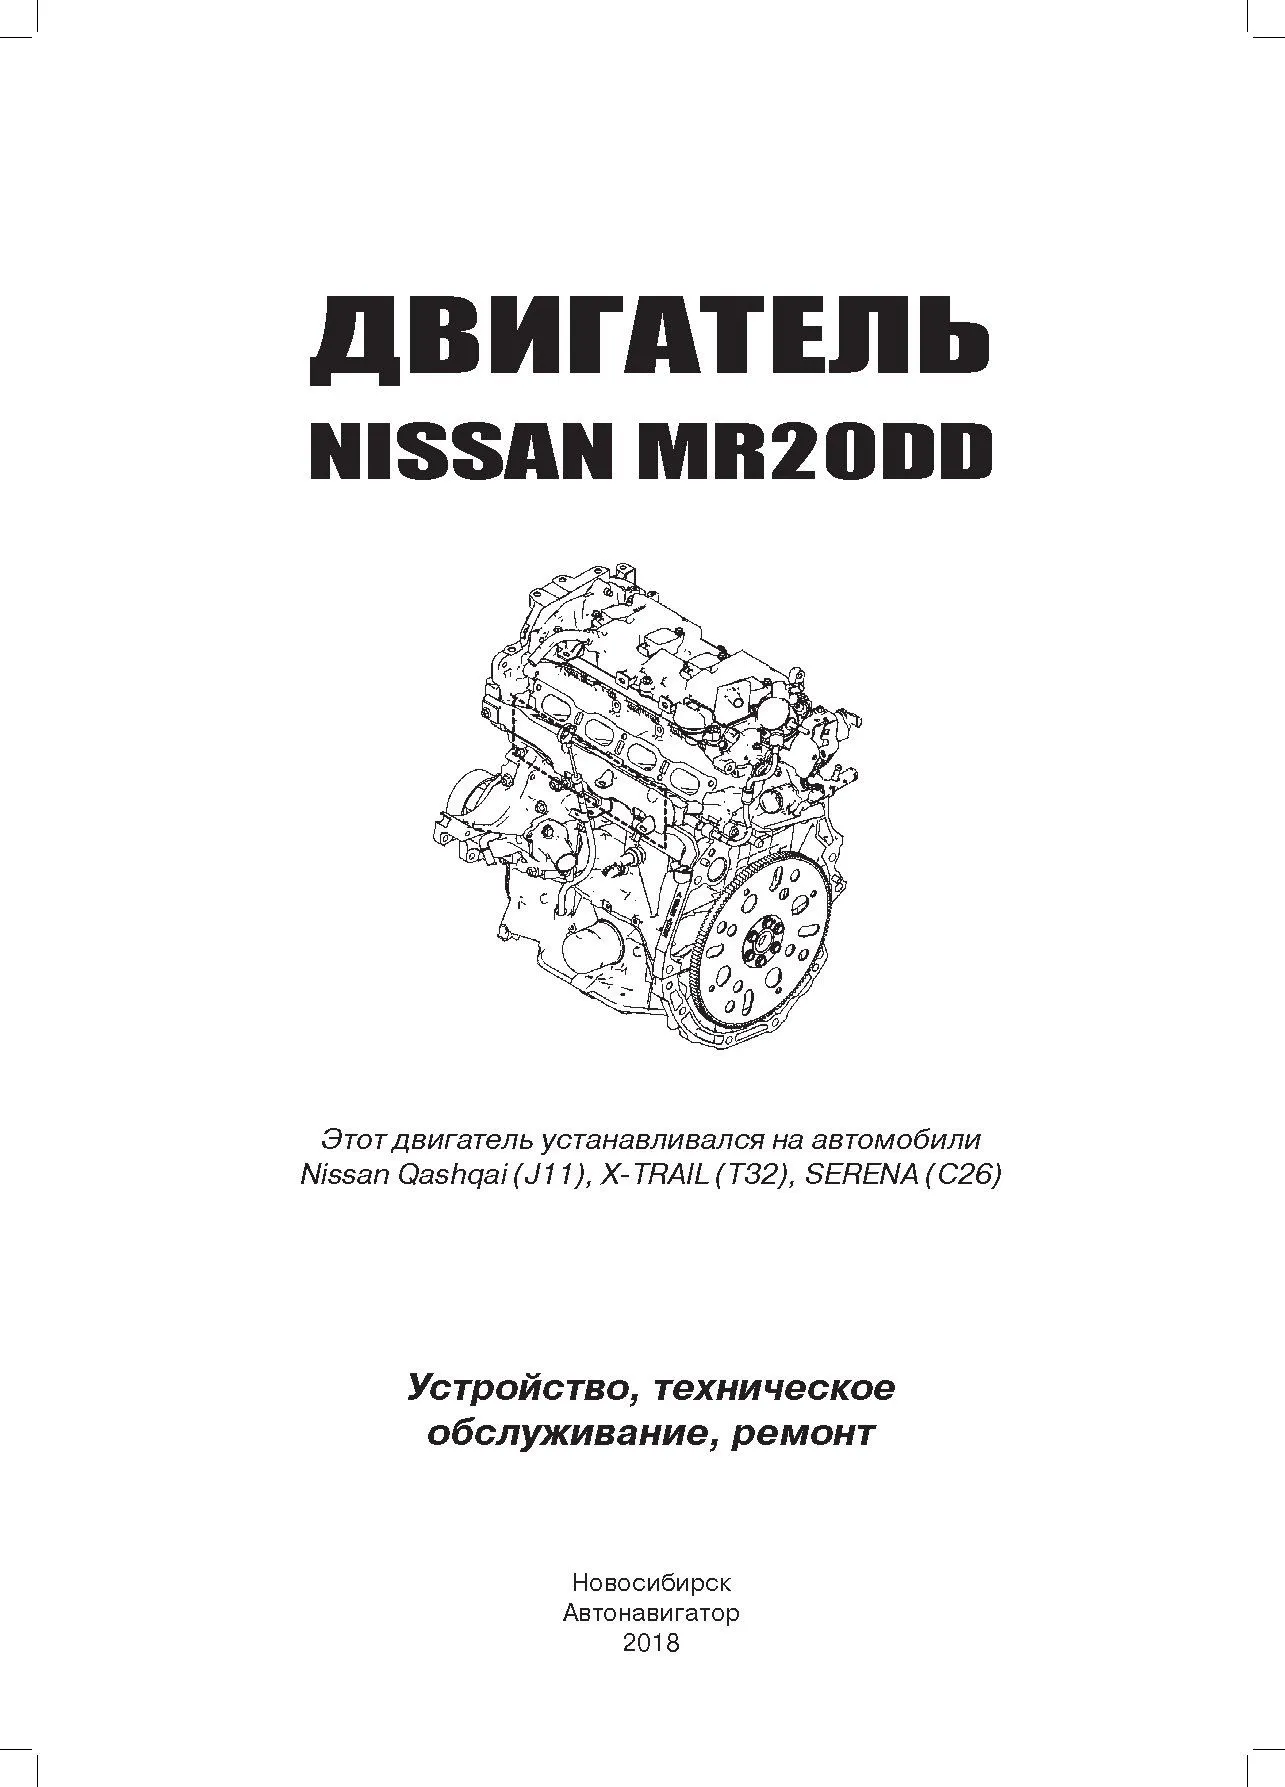 Книга Nissan двигатели MR20DD, электросхемы. Руководство по ремонту и эксплуатации. Автонавигатор